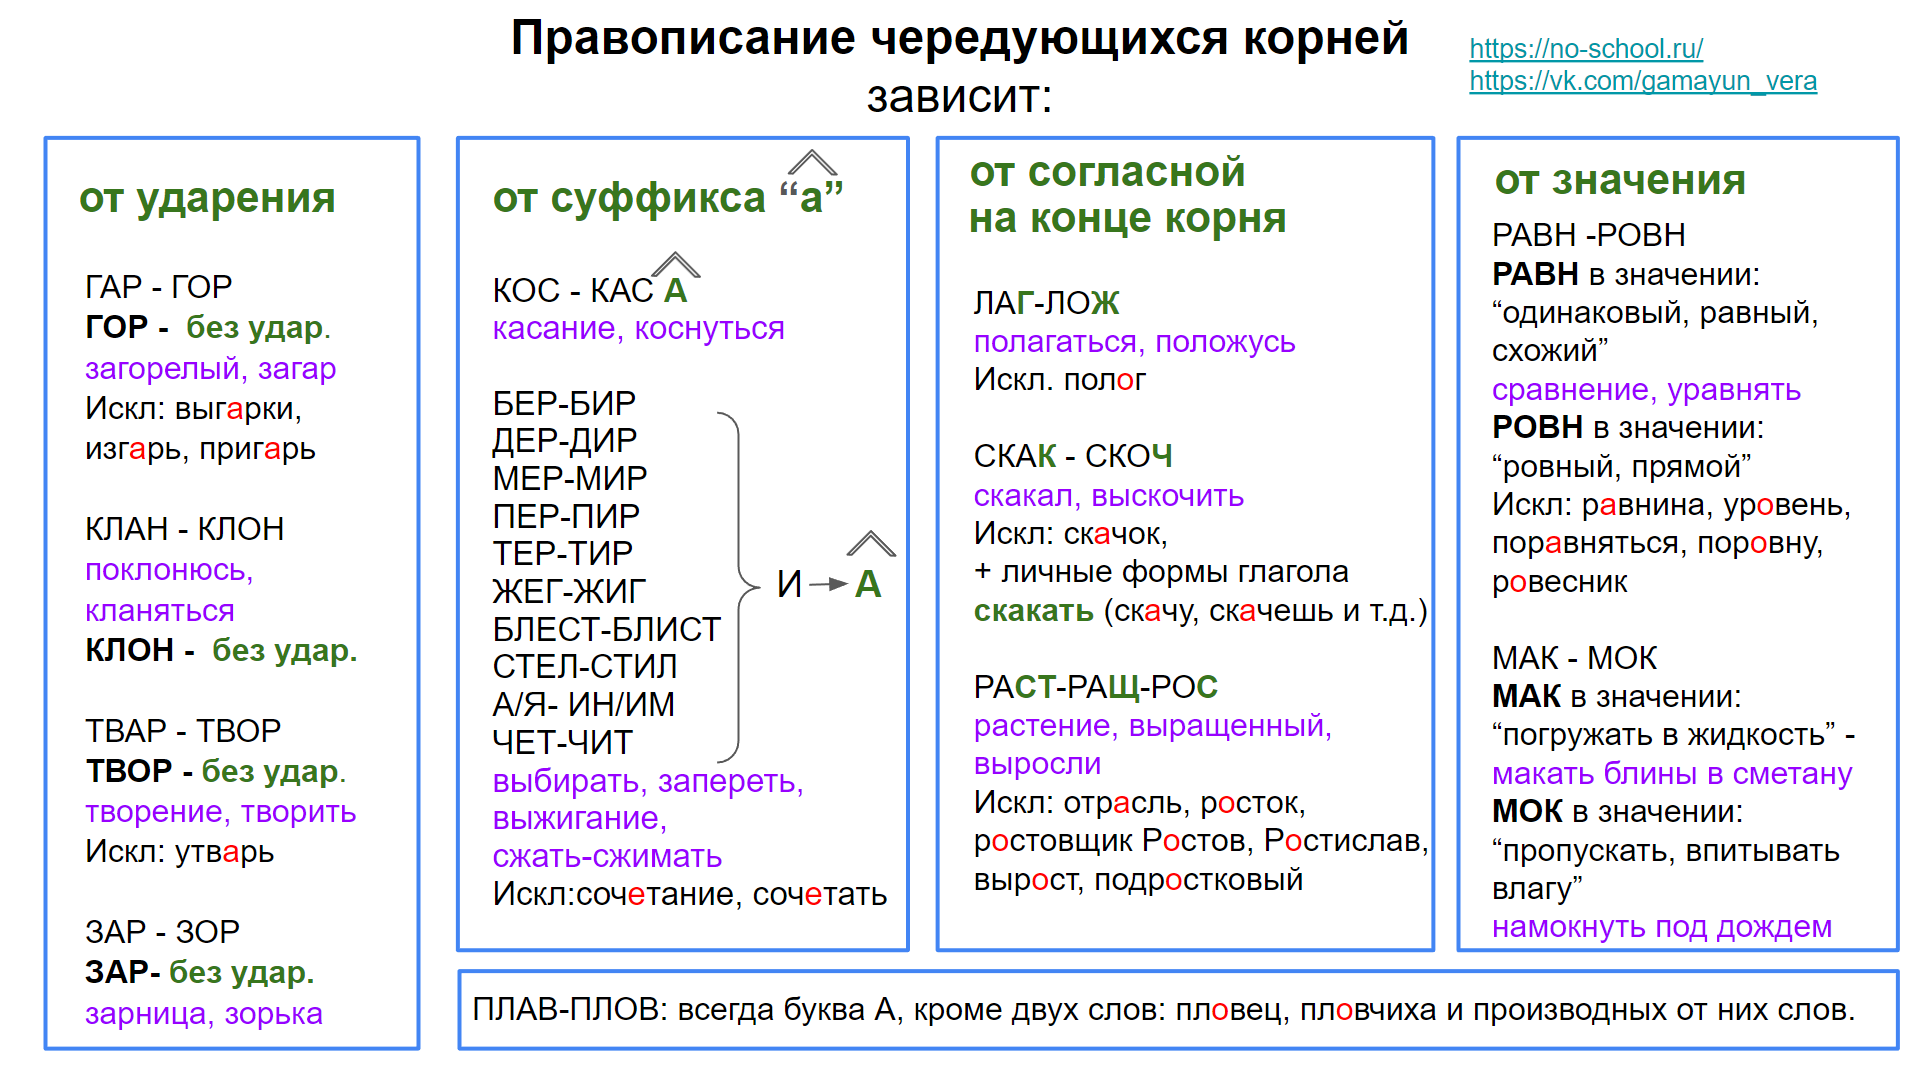 Как пишется безынтересный или безинтересный. Корни для ЕГЭ по русскому языку.